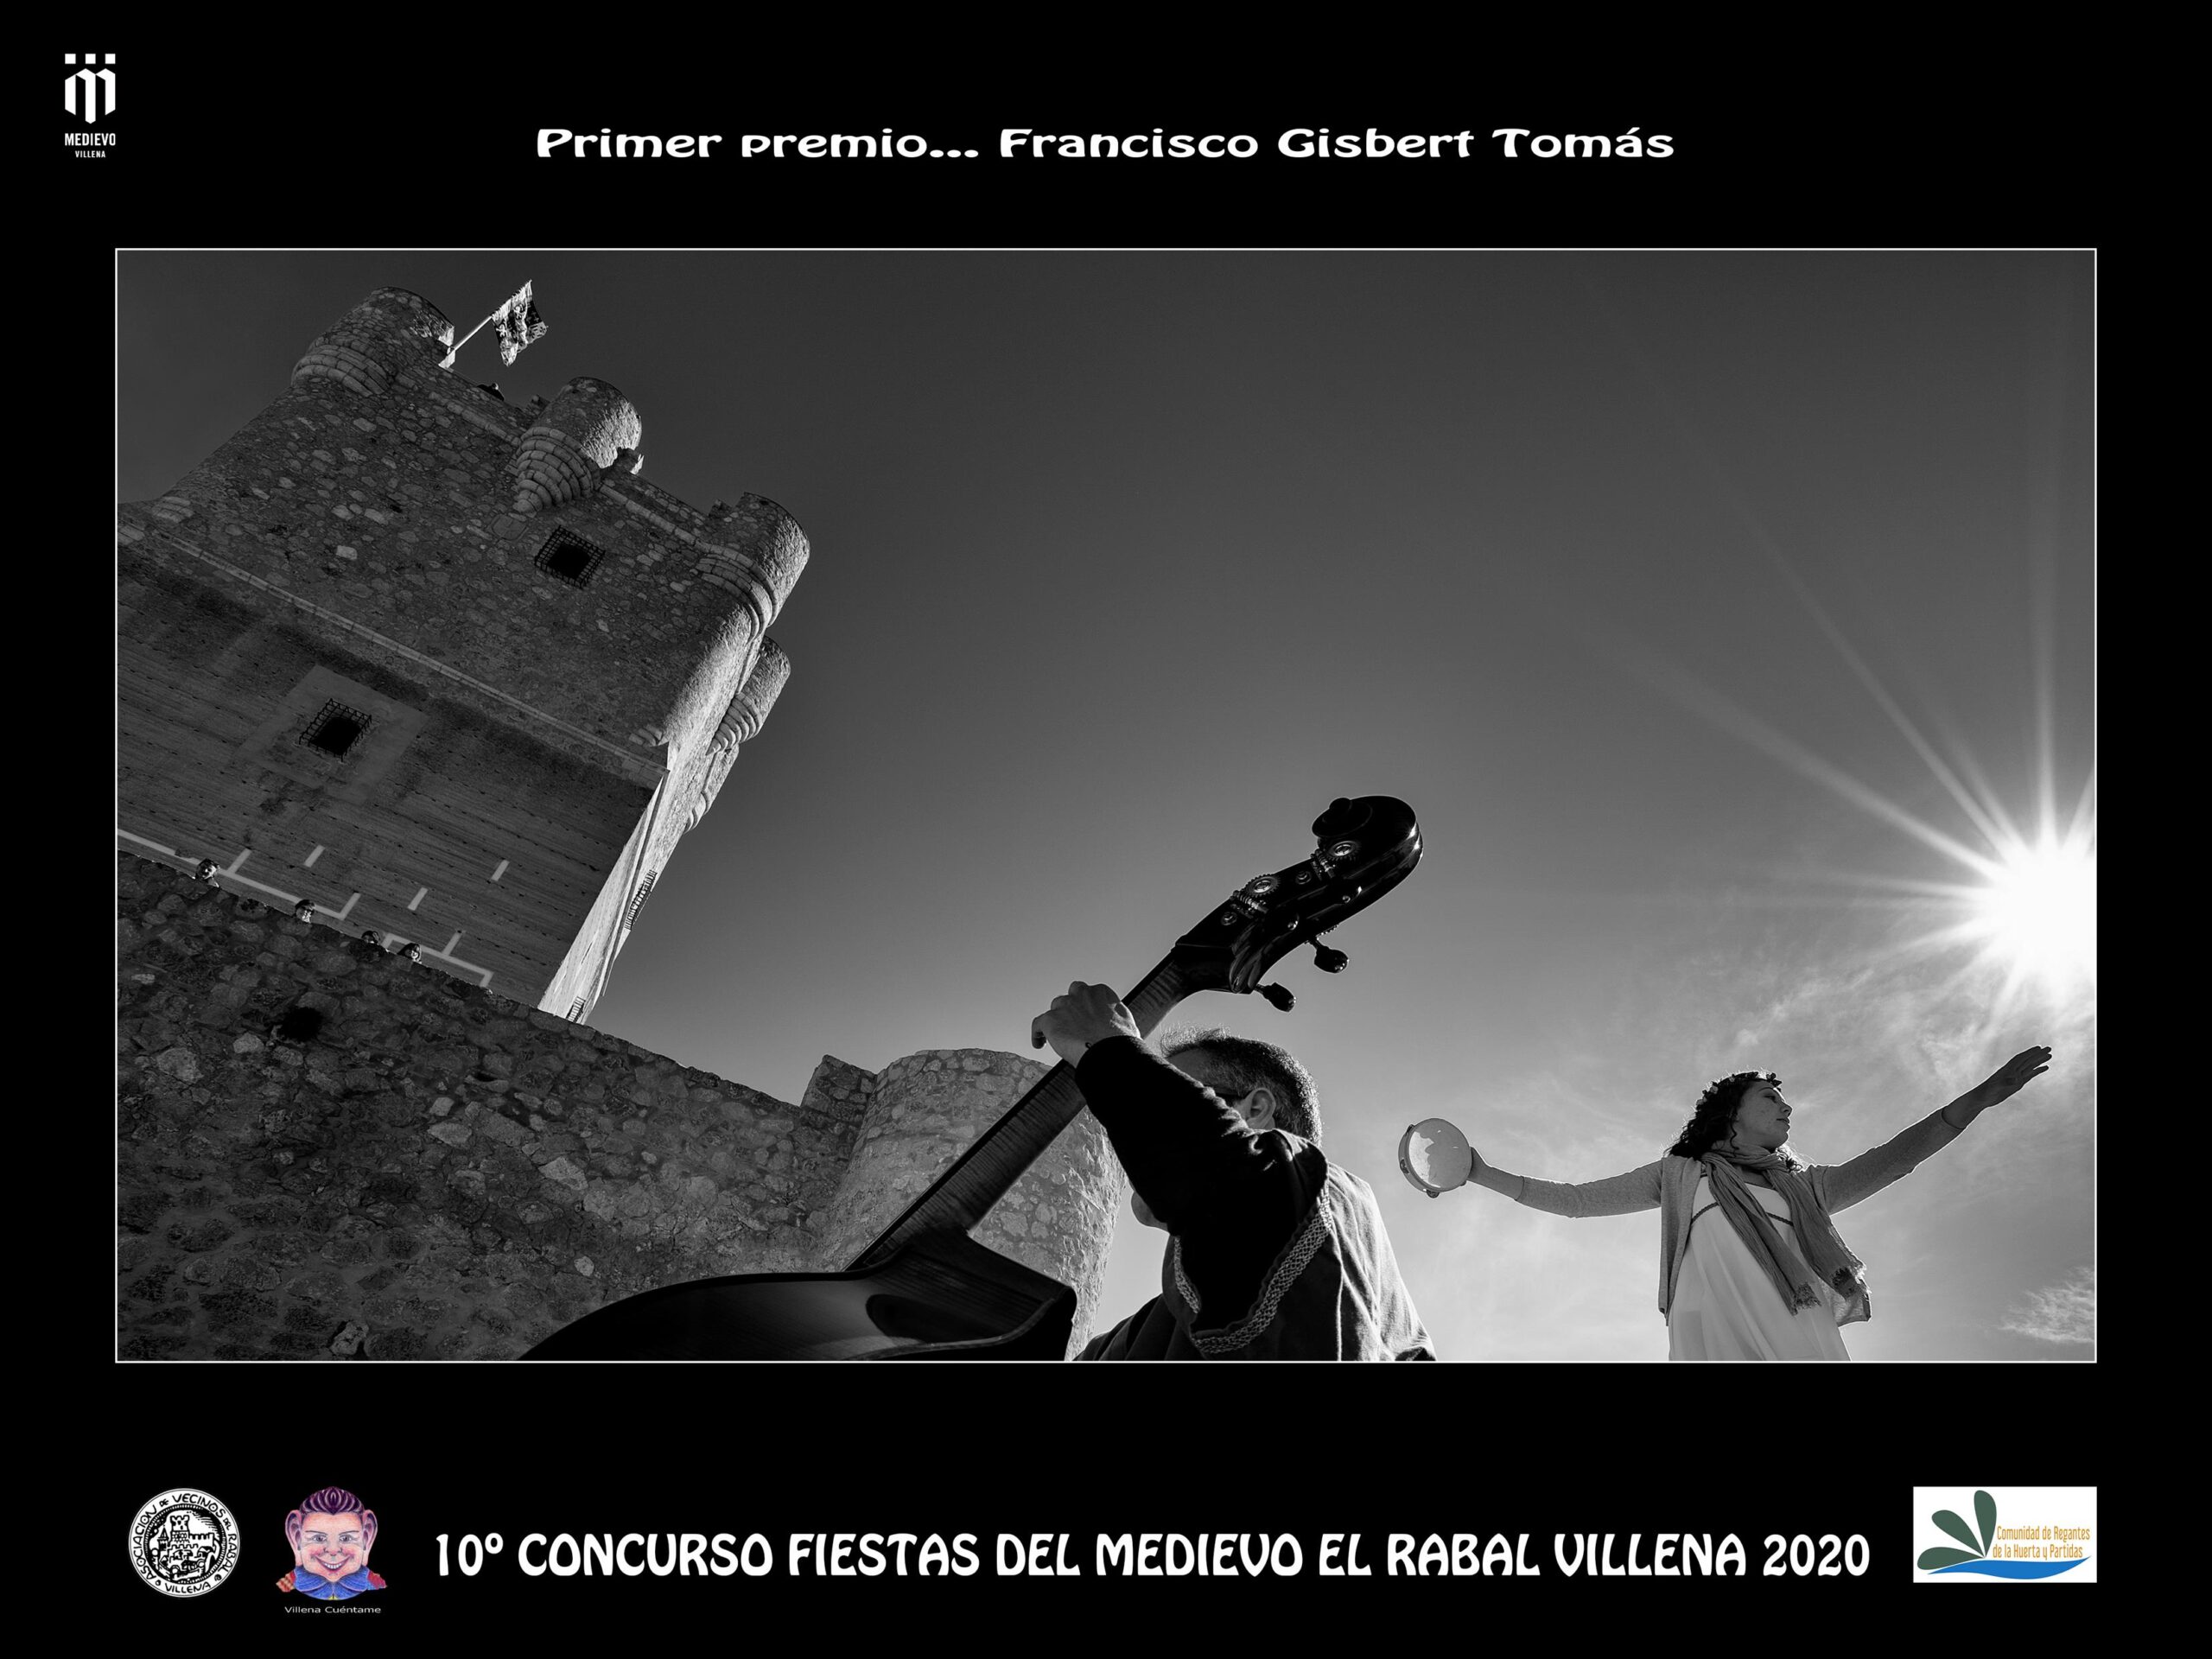 Francisco Gisbert y Francisco Hernández ganan el concurso de fotografía y vídeo respectivamente de “Fiestas del Medievo 2020”